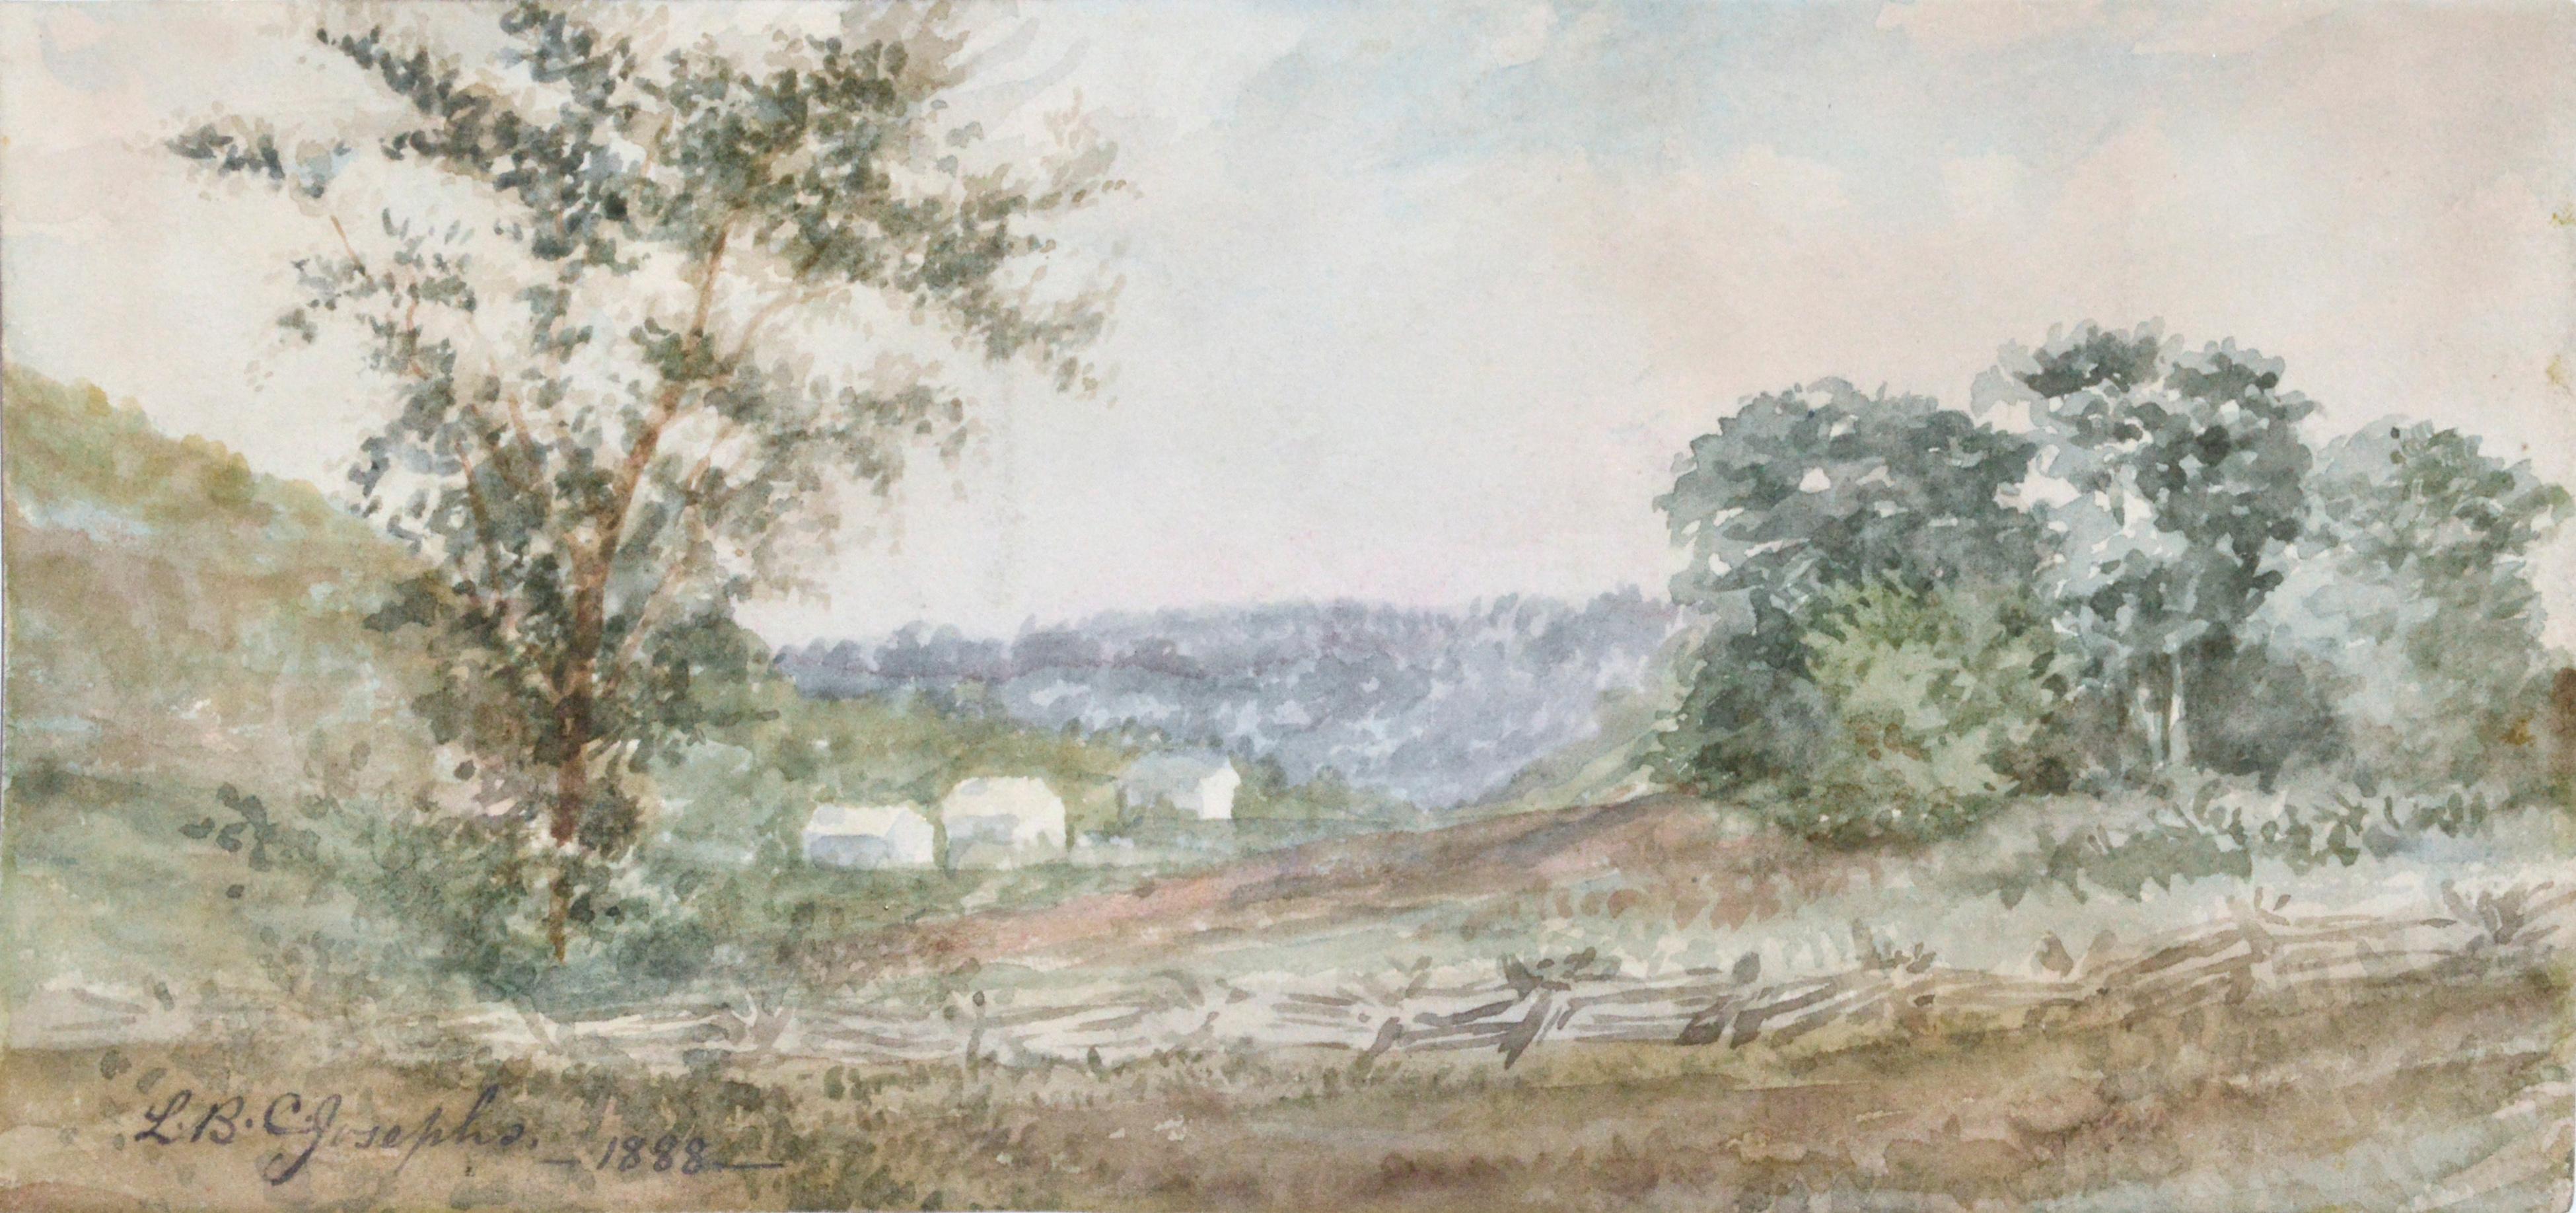 Hammondsport:: Hudson Valley:: Finger Lakes:: New York:: Landschaft des späten 19. Jahrhunderts – Painting von LBC Josephs